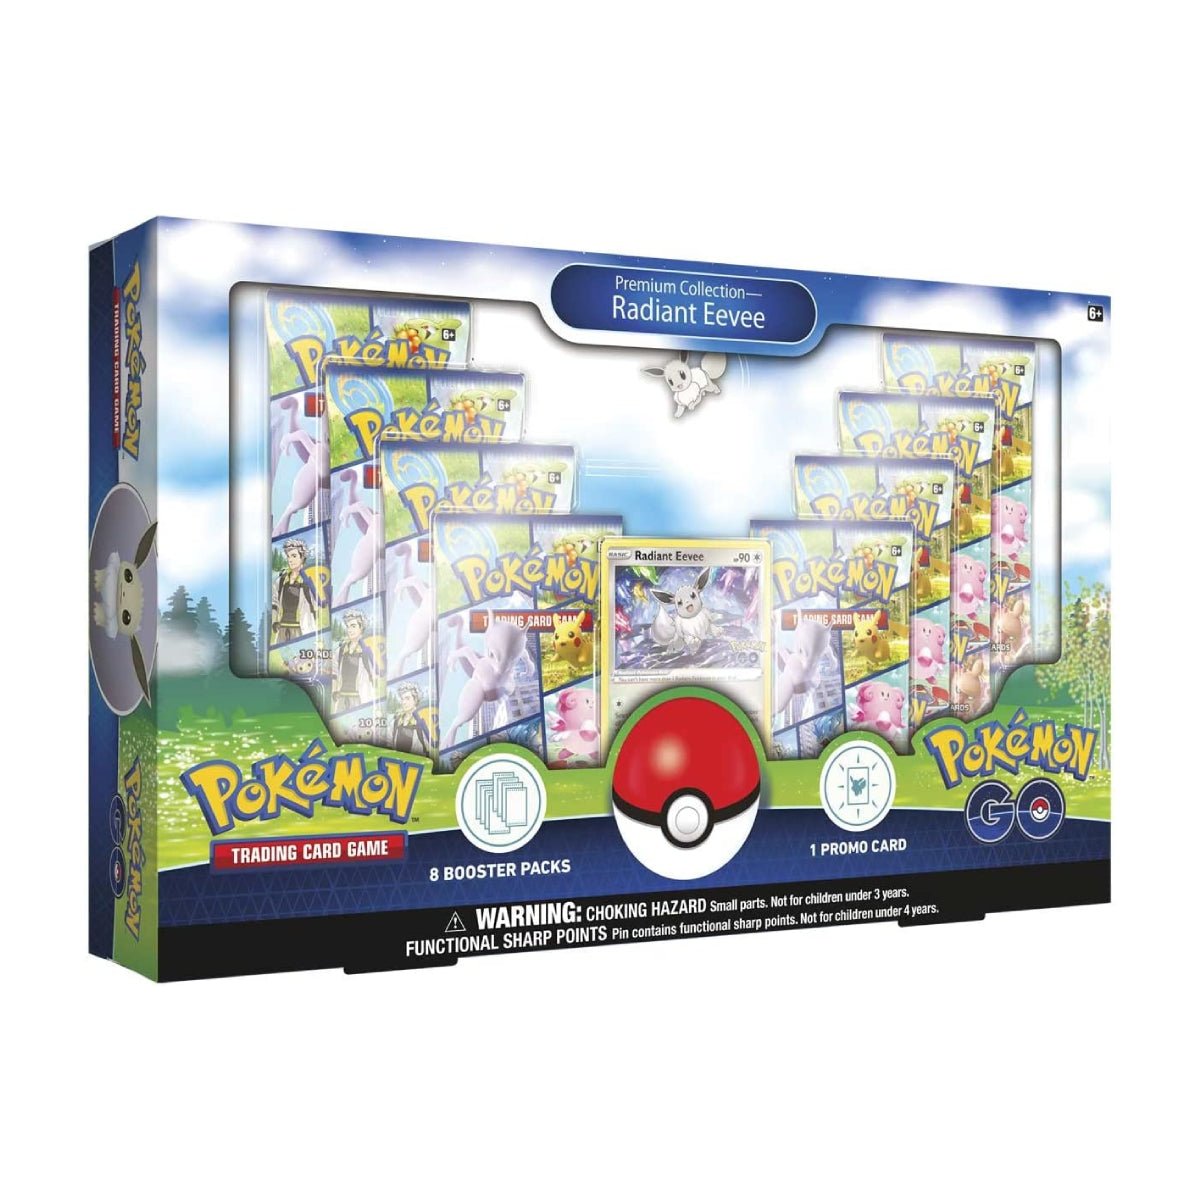 SWSH 10.5 Pokémon Go Premium Coll - Radiant Eevee Box - Store 974 | ستور ٩٧٤